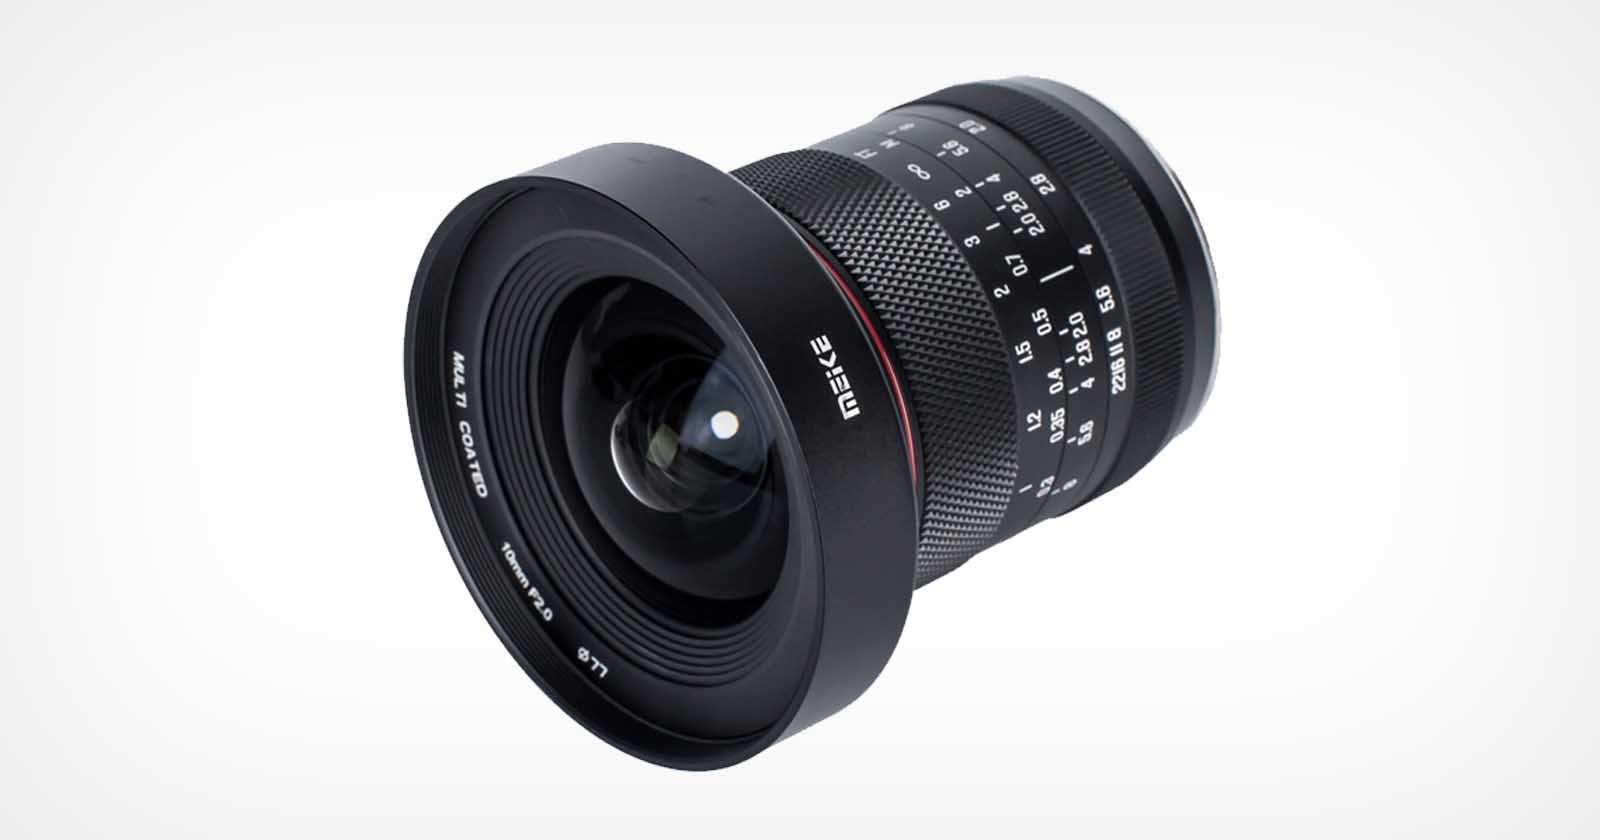  meike introduces 449 10mm aps-c prime lens 